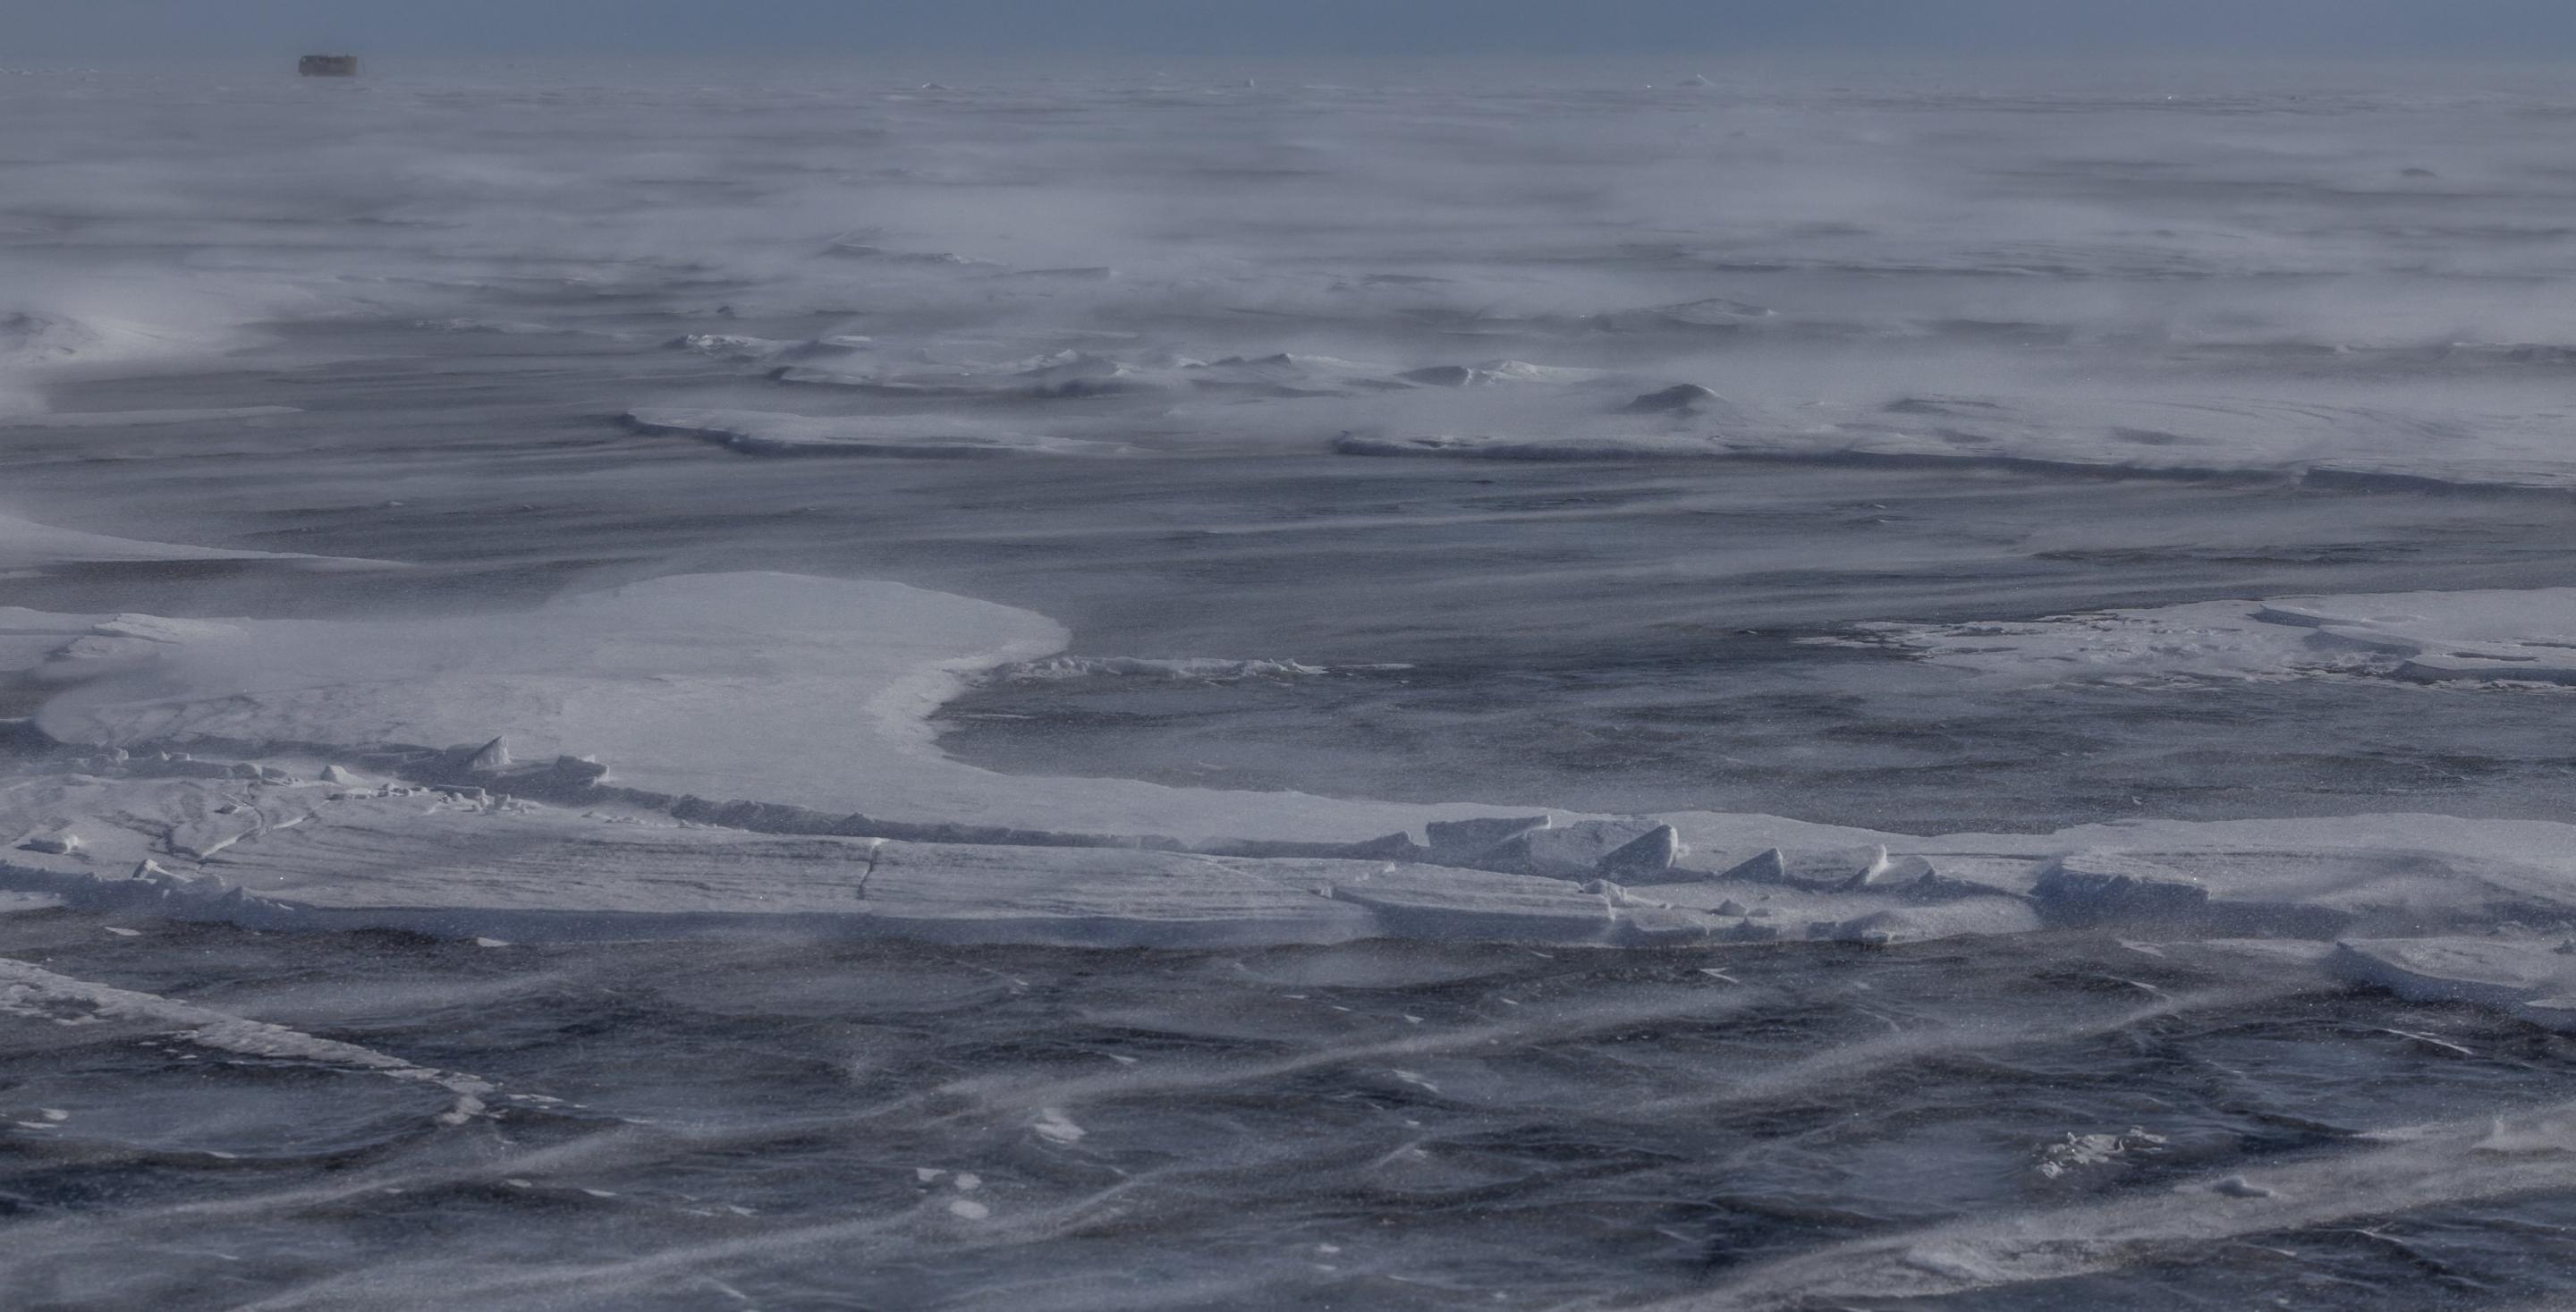 Détails de la neige sur la glace du lac Baïkal en Sibérie. Le vent souffle fort et sculpte aussi bien la neige que la glace. Lac Baïkal - Sibérie - Russie